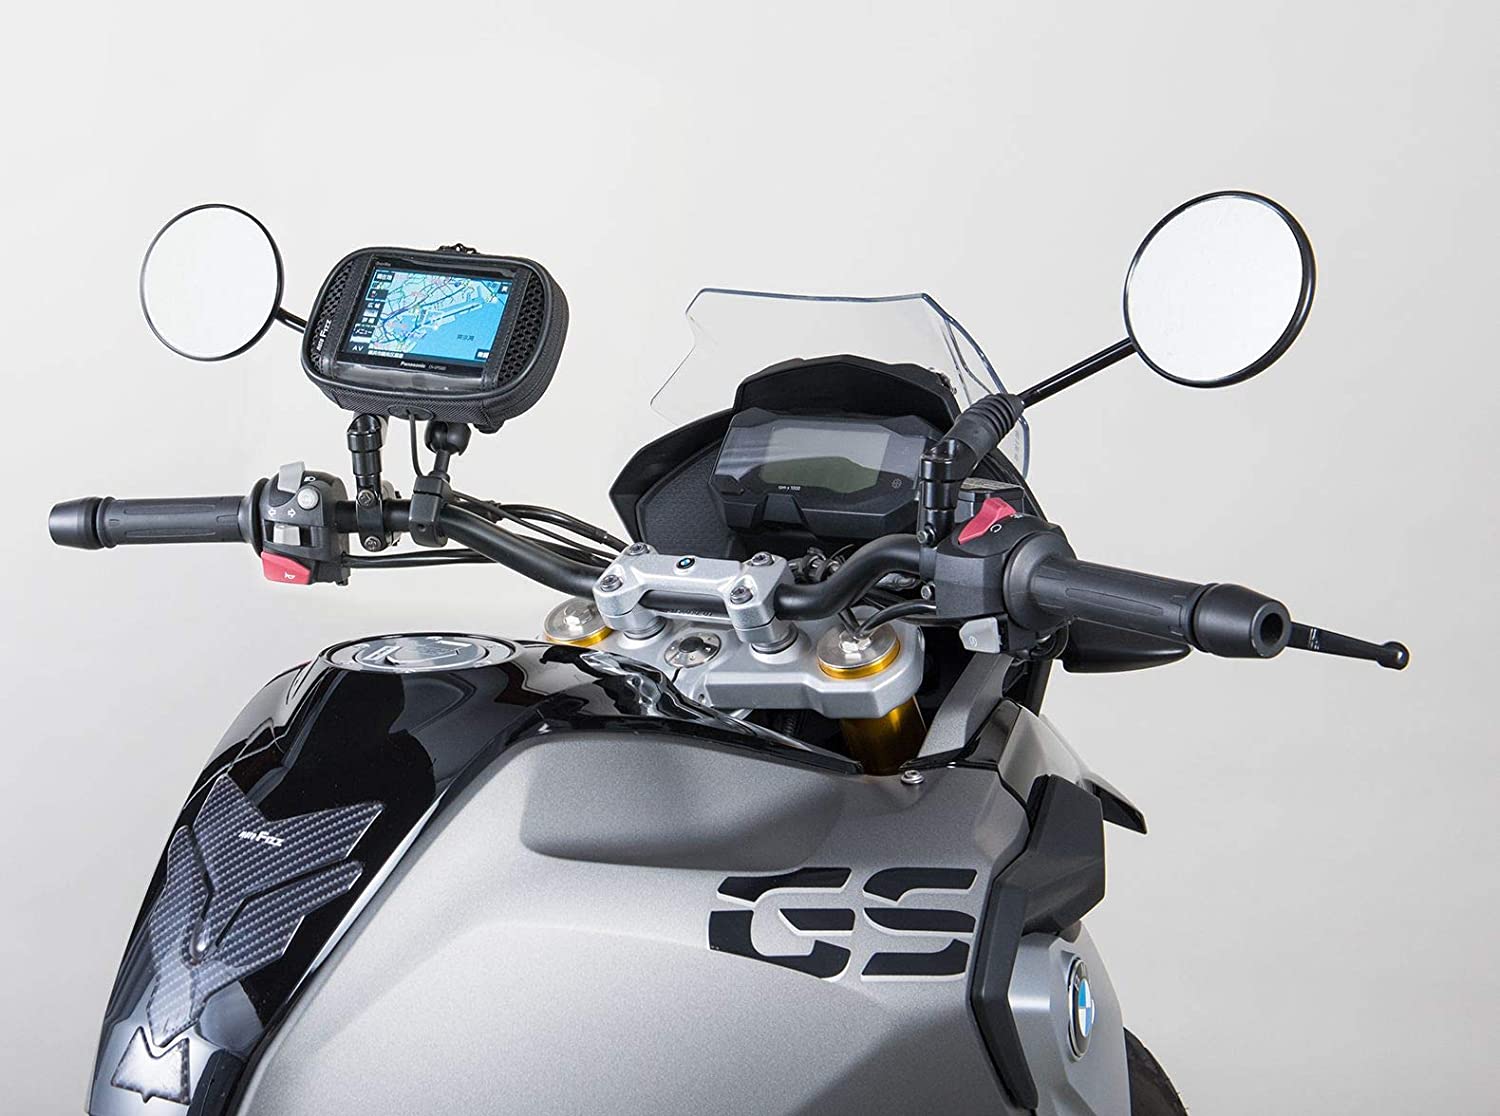 947円 新作モデル Tiakia バイク スマホ ホルダー 原付 携帯ホルダー スタンド オートバイ スマートフォン振れ止め 脱落防止 GPSナビ 携帯